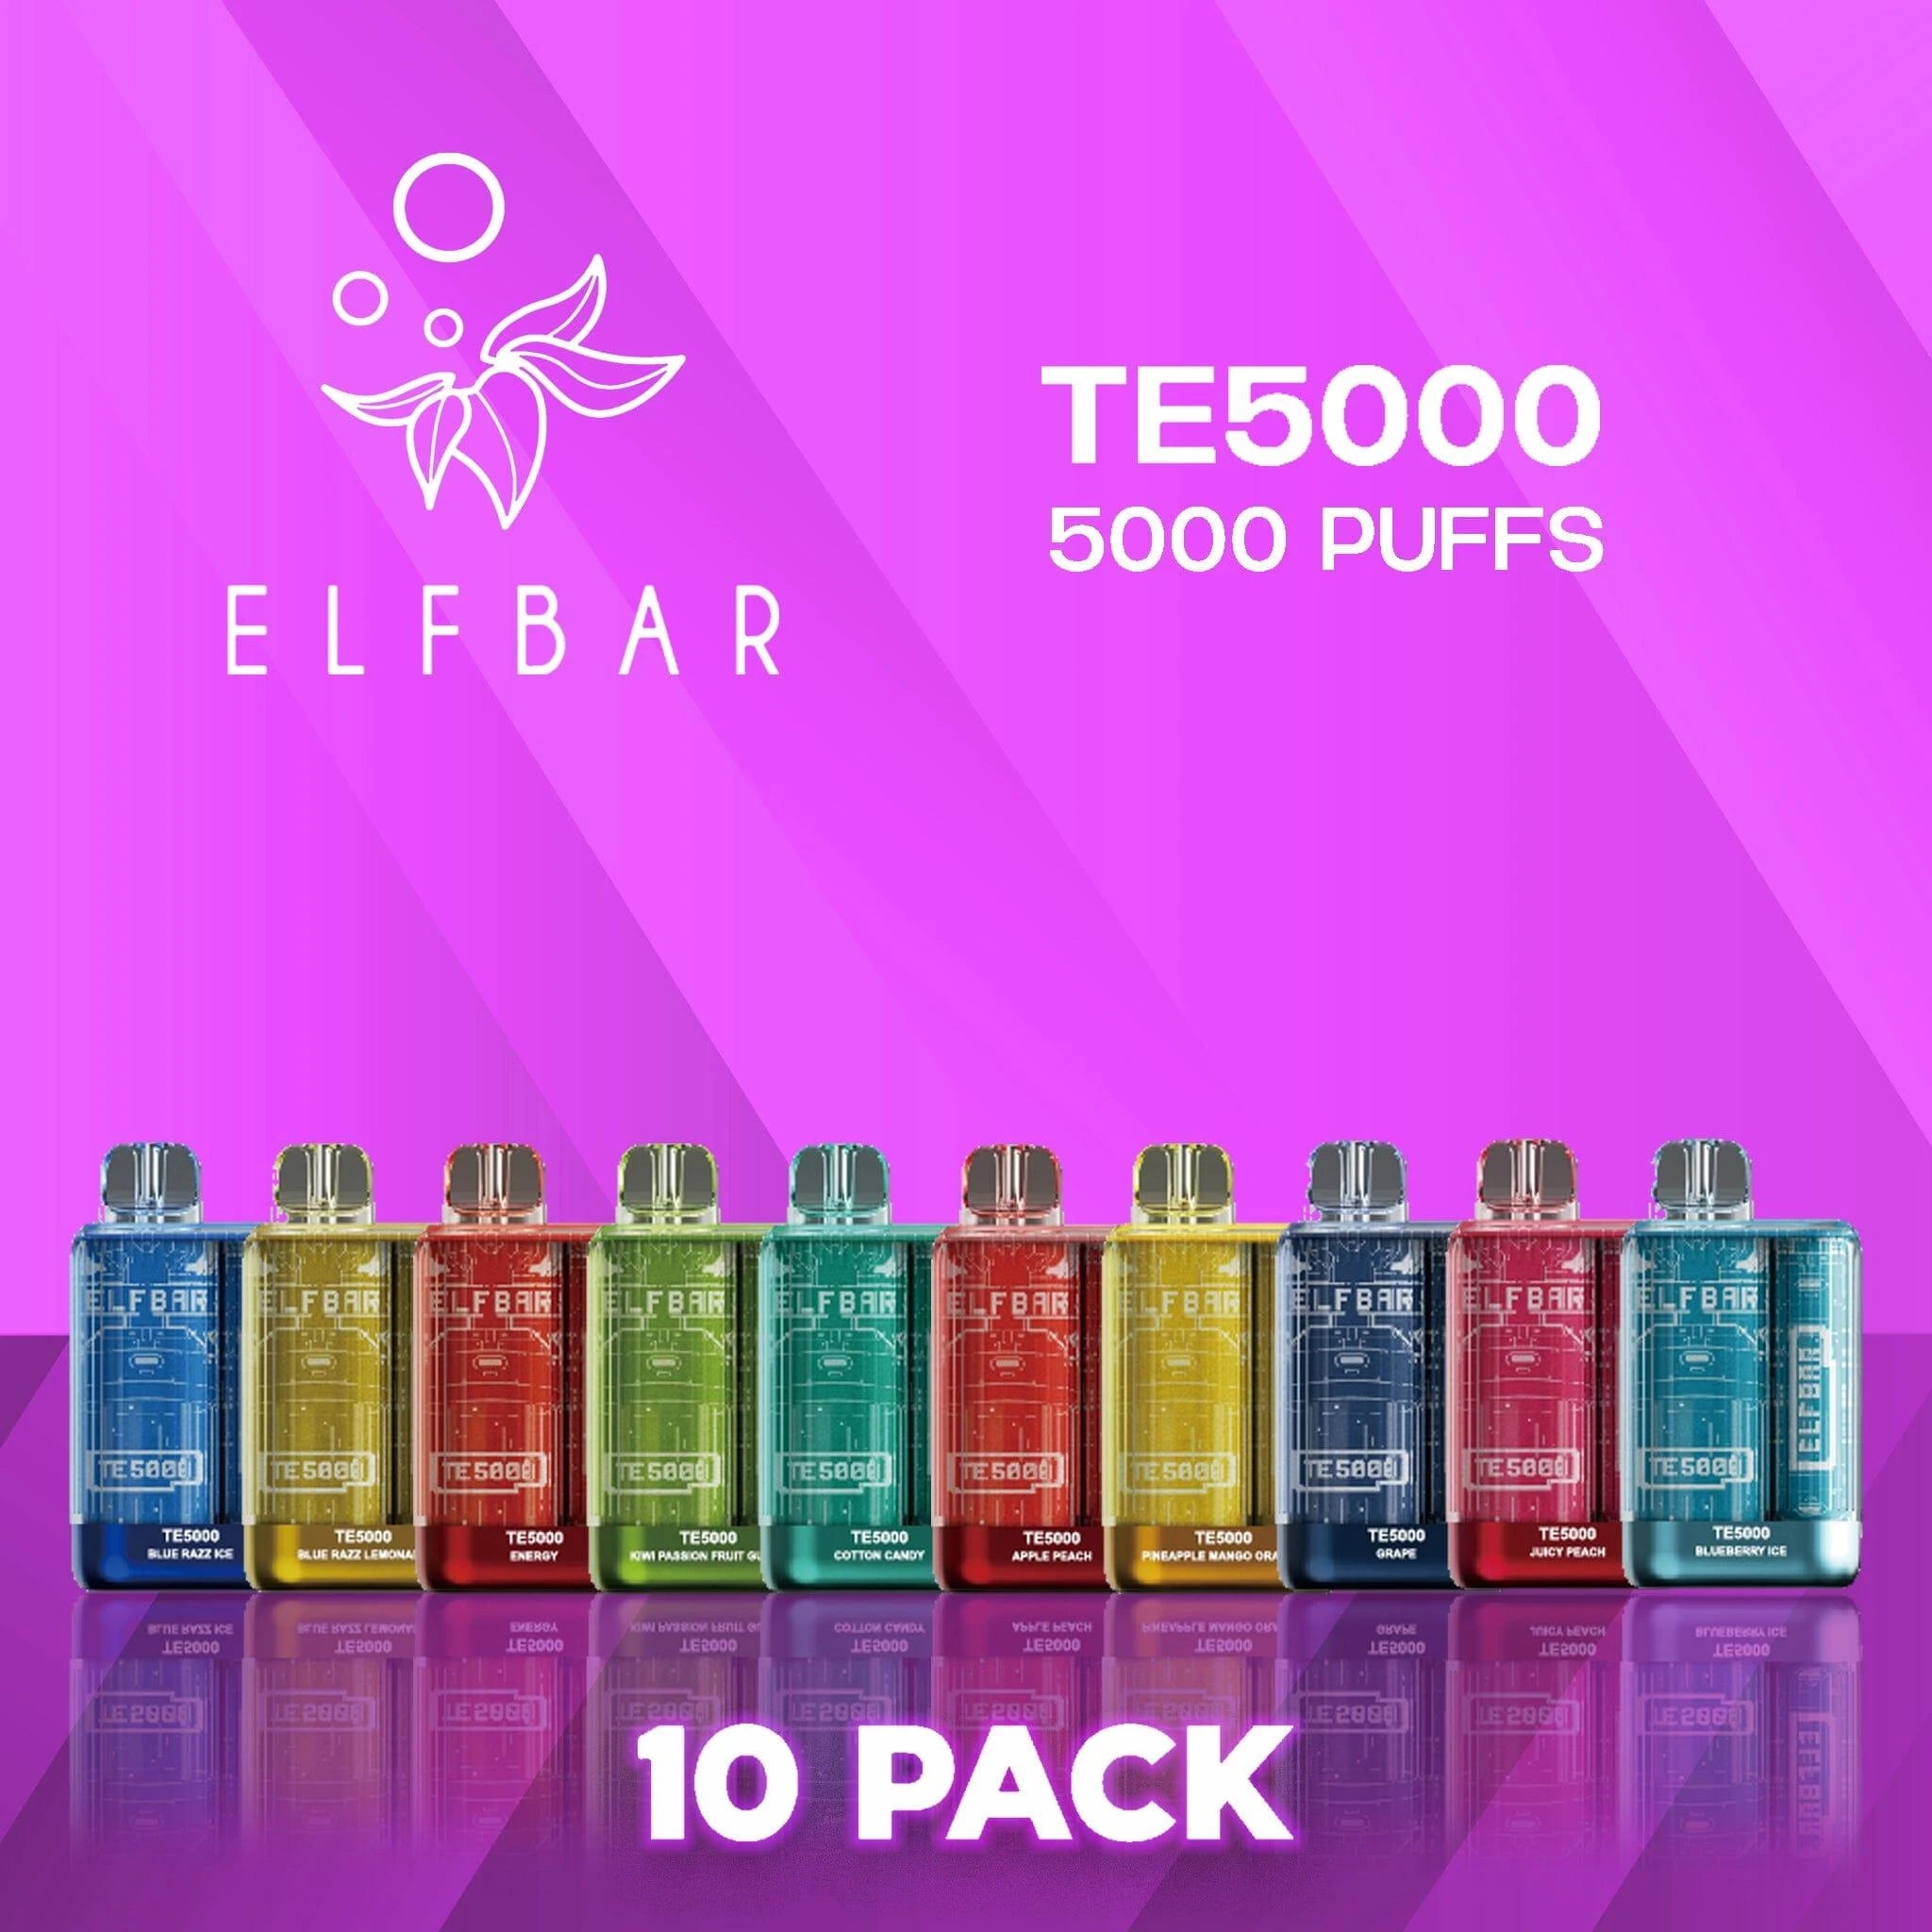 Elf Bar TE5000 Disposable Vape 5000 Puffs - 10 Pack